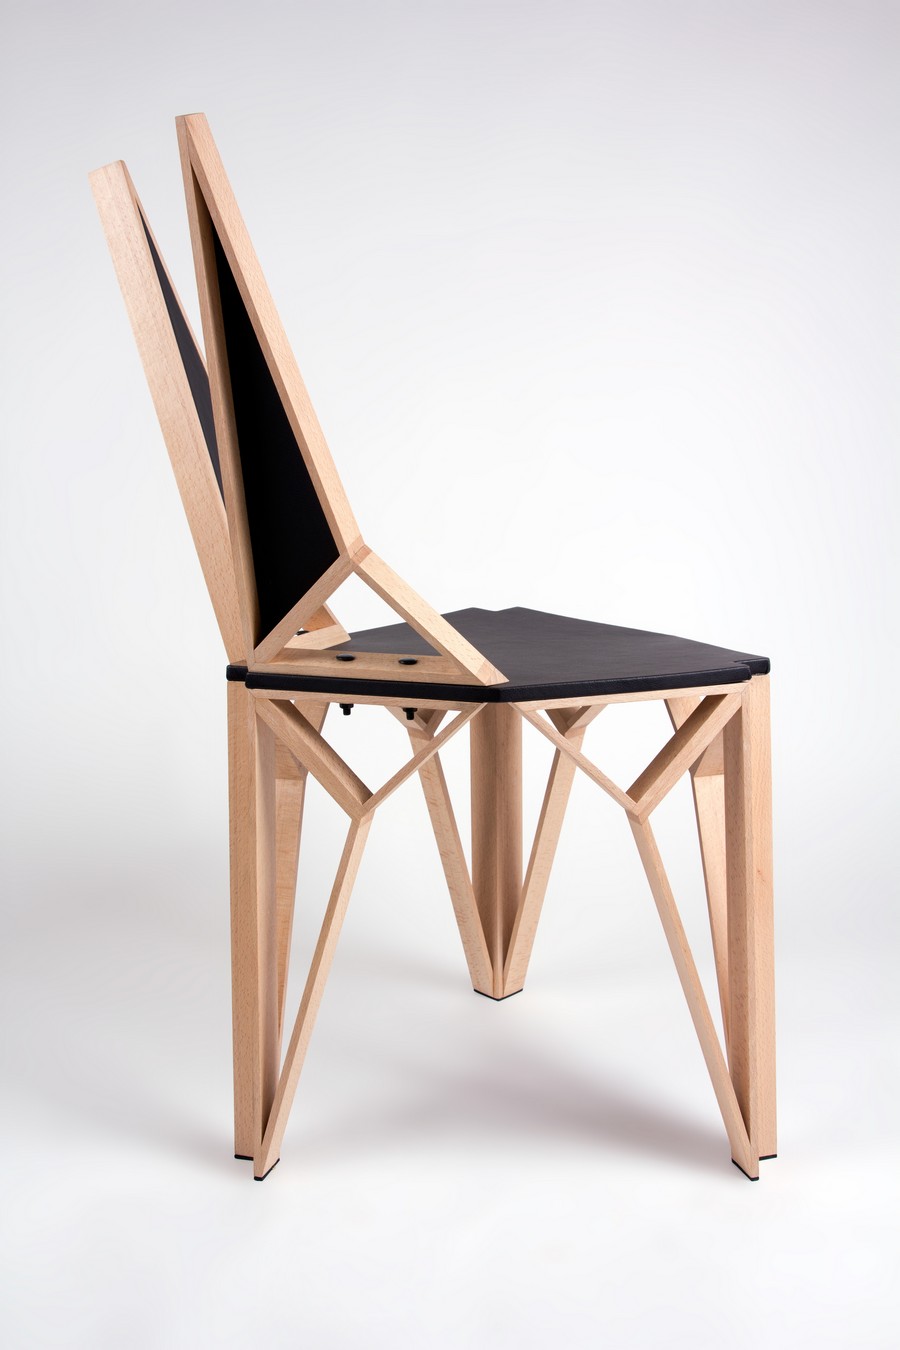 20 Desain  kursi  paling unik  kreatif dan keren dari kayu 